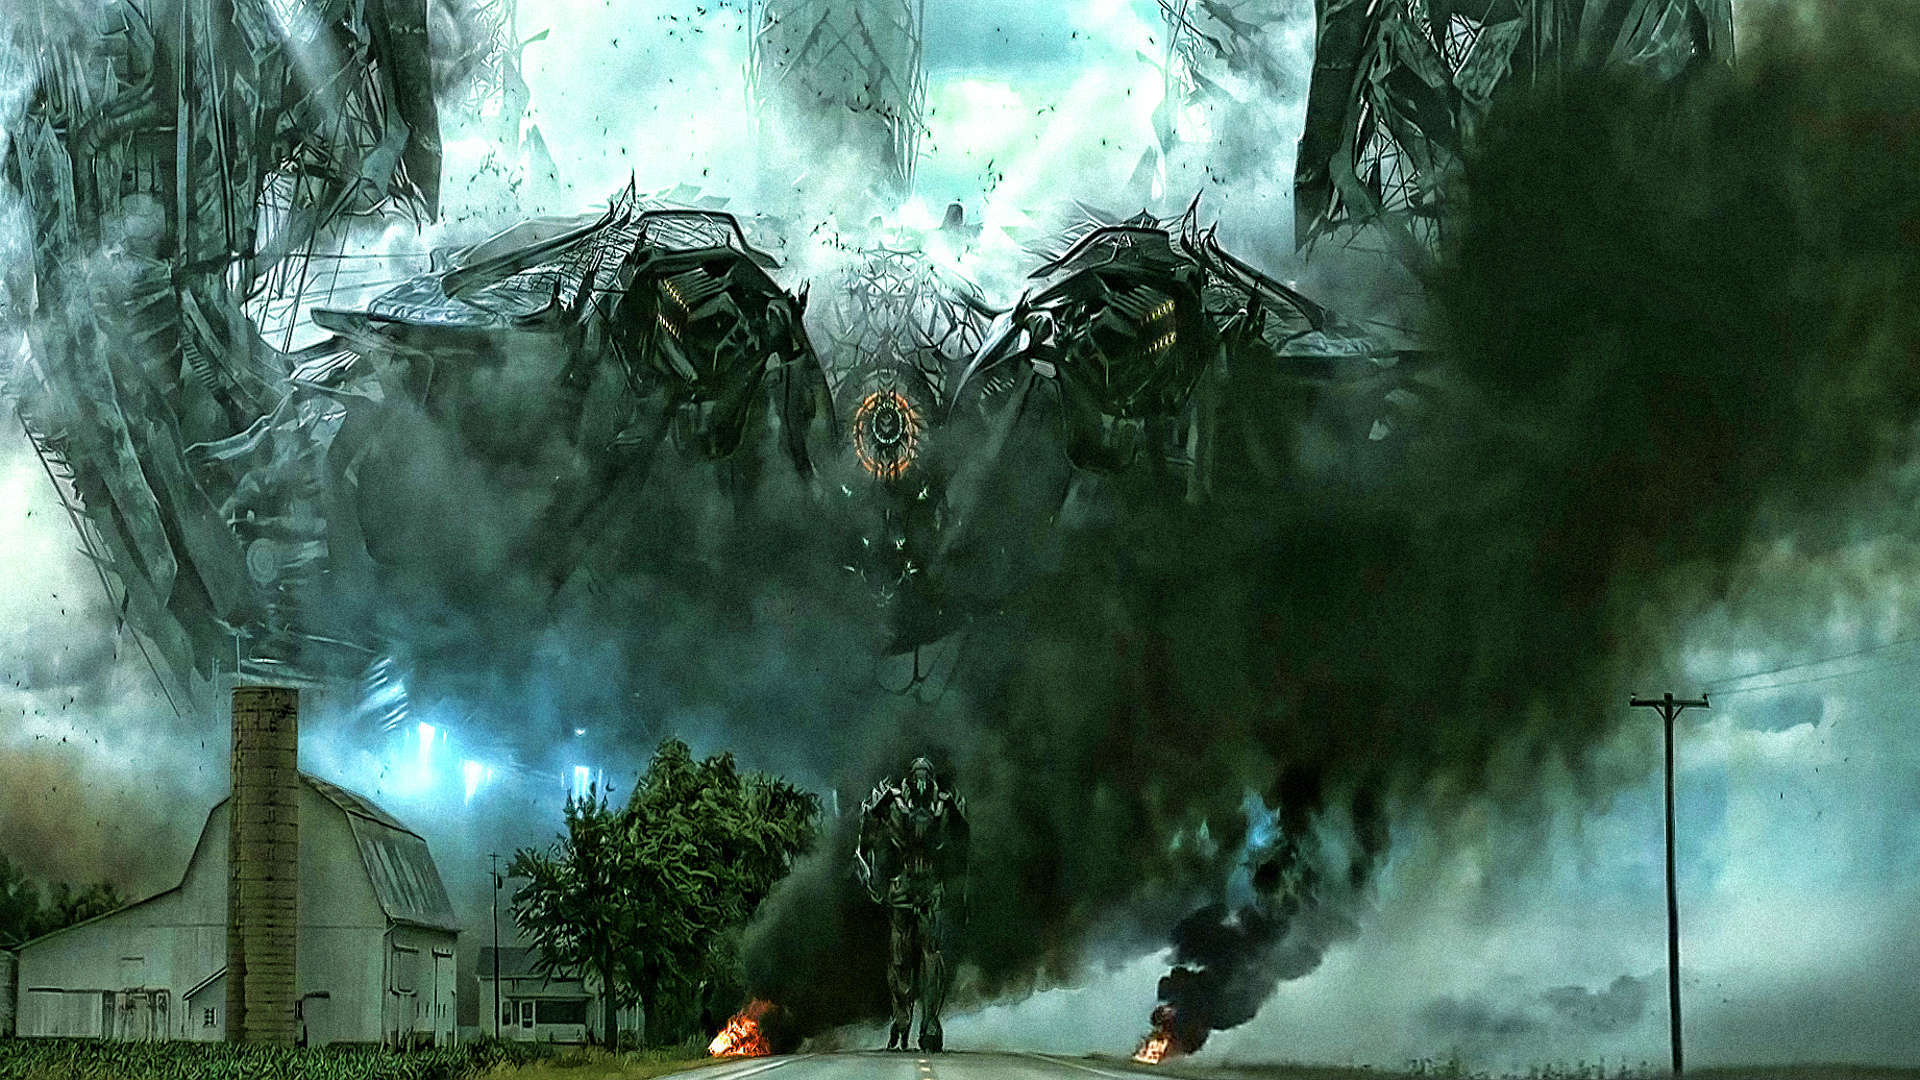 49+] Transformers 4 Wallpaper HD 1080p - WallpaperSafari